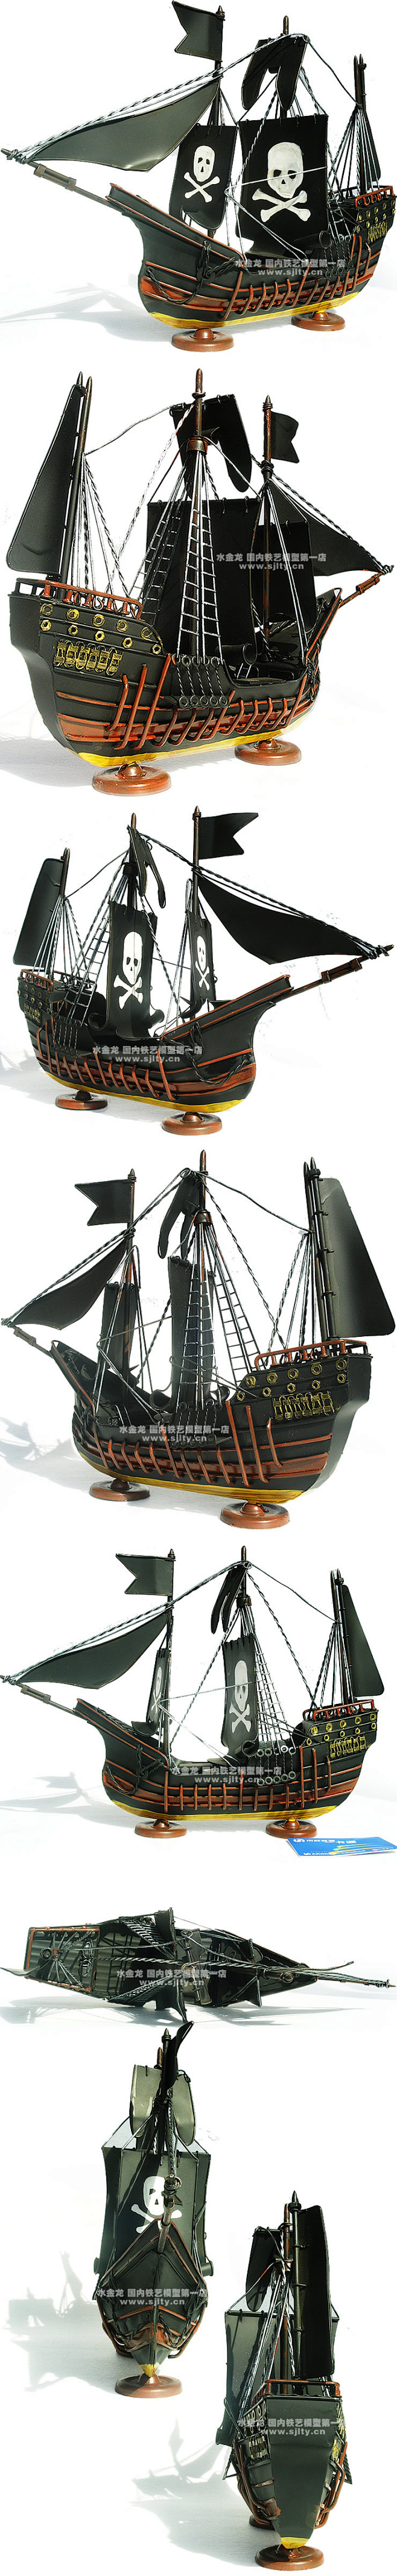 水金龙模型 加勒比海盗船-黑-精细版-纯...